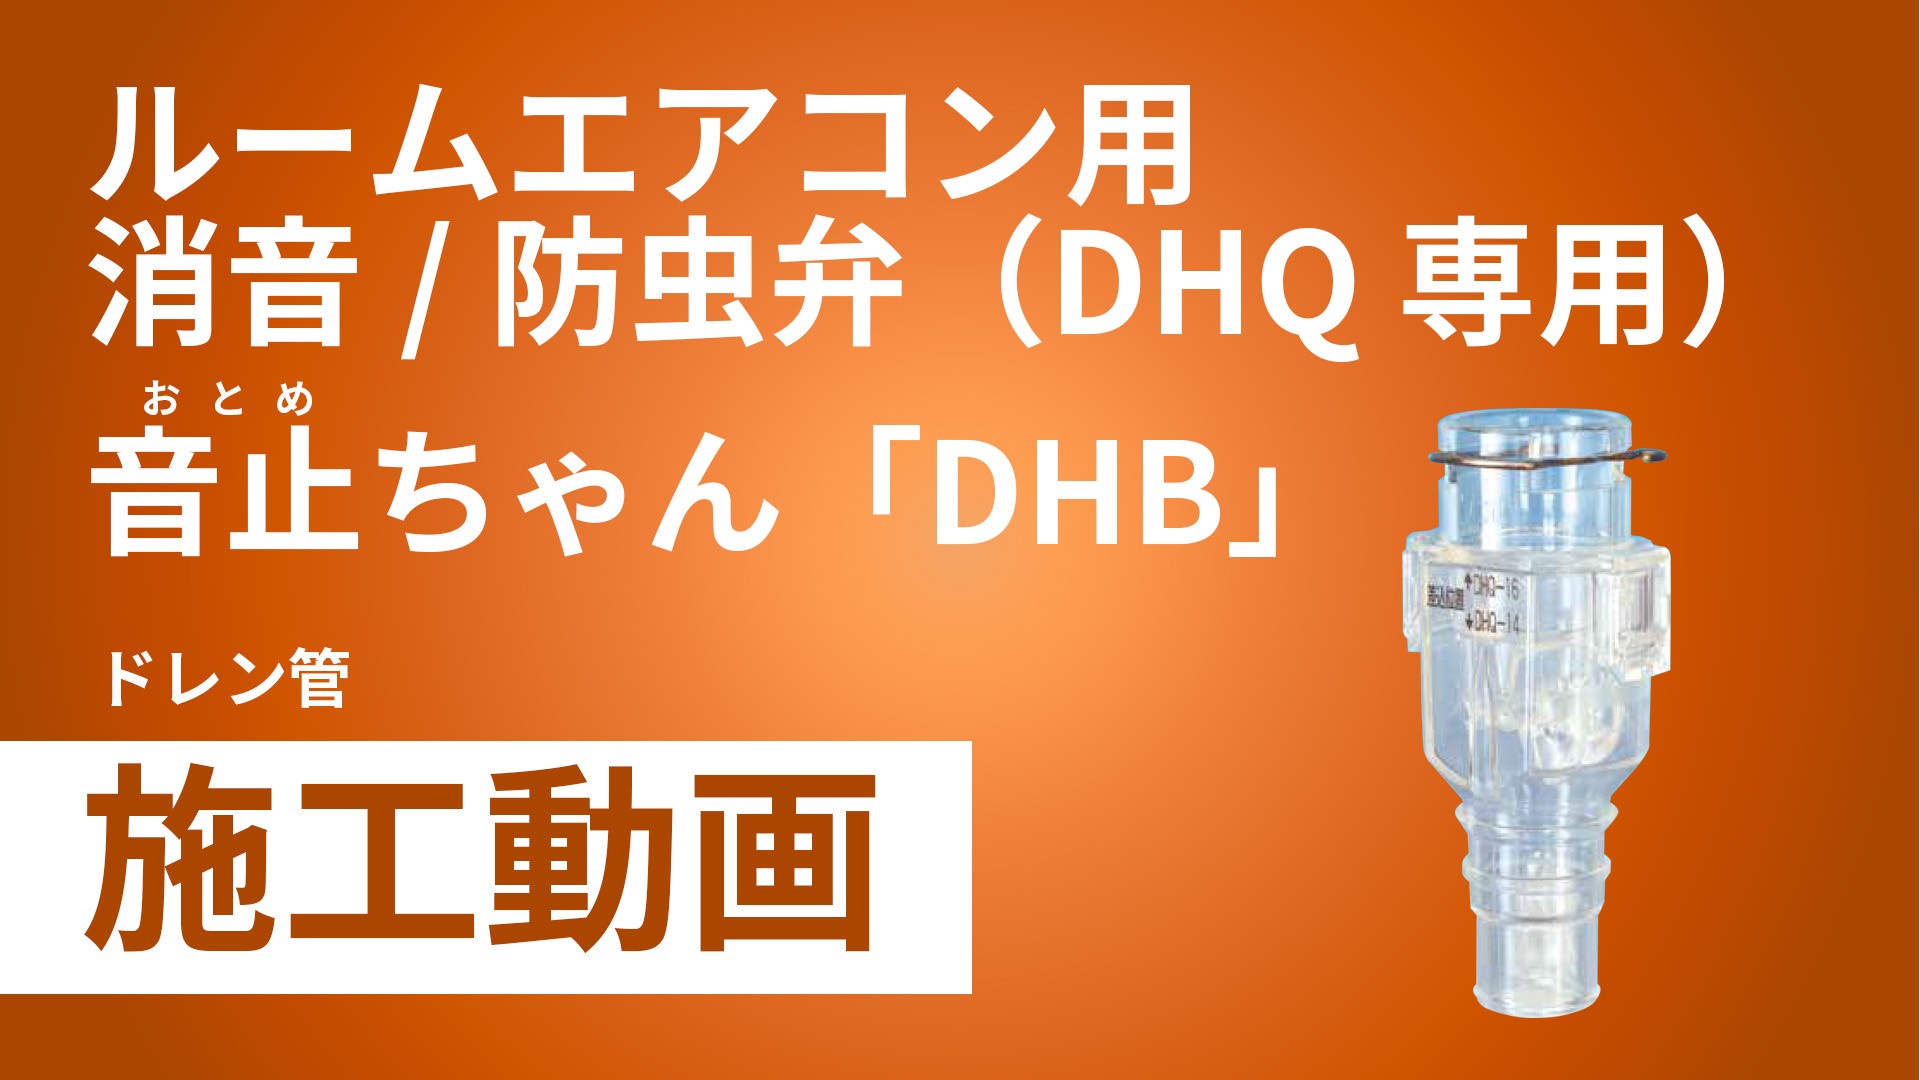 ルームエアコン用消音/防虫弁（DHQ専用）音止ちゃん「DHB」施工手順動画